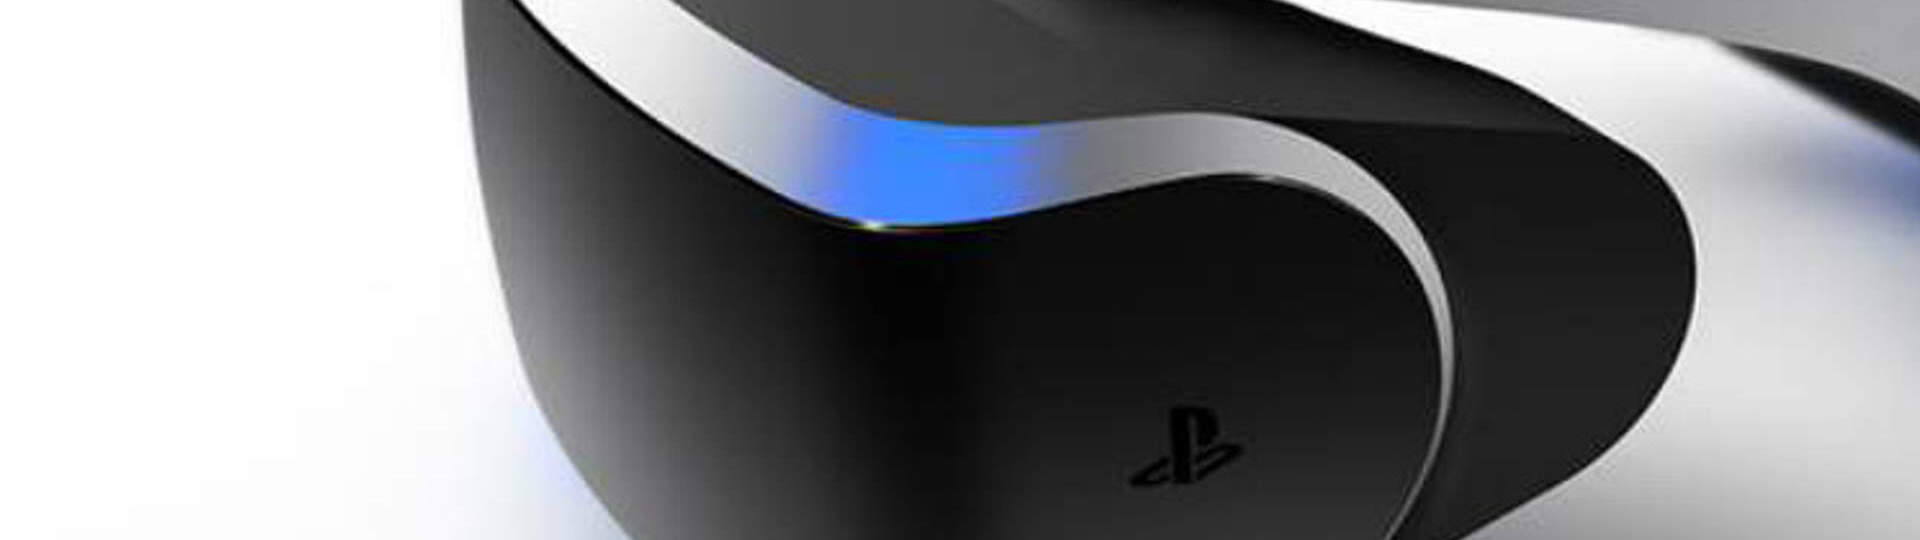 PS5 hry nebudou podporovat VR set | Novinky